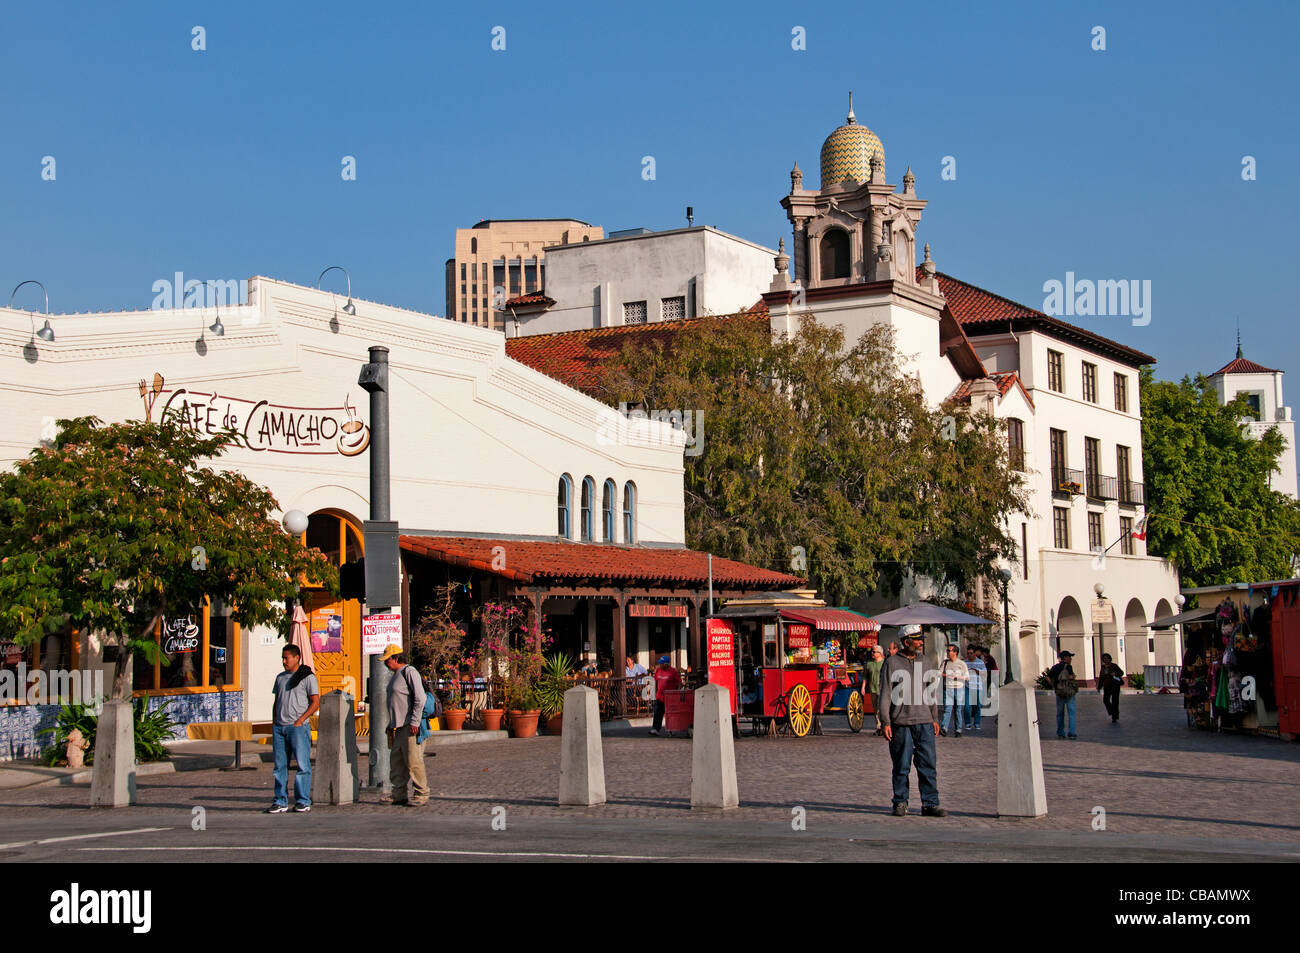 Le centre-ville de El Pueblo espagnol Espagne Los Angeles California United States Banque D'Images